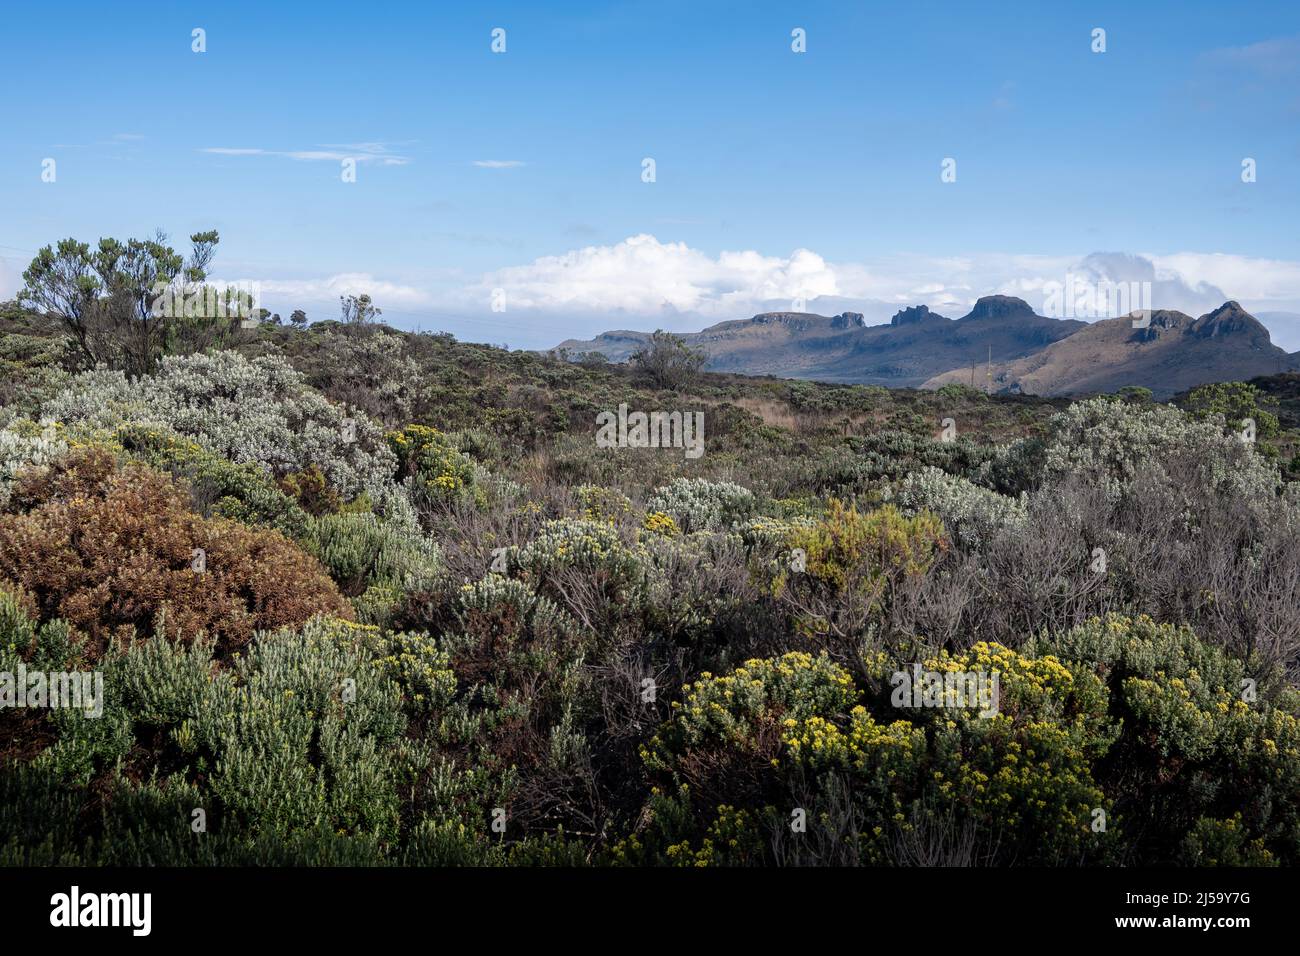 Les végétations dans le paramo de haute altitude des Andes. Parc national de Los Nevados, Colombie, Amérique du Sud. Banque D'Images